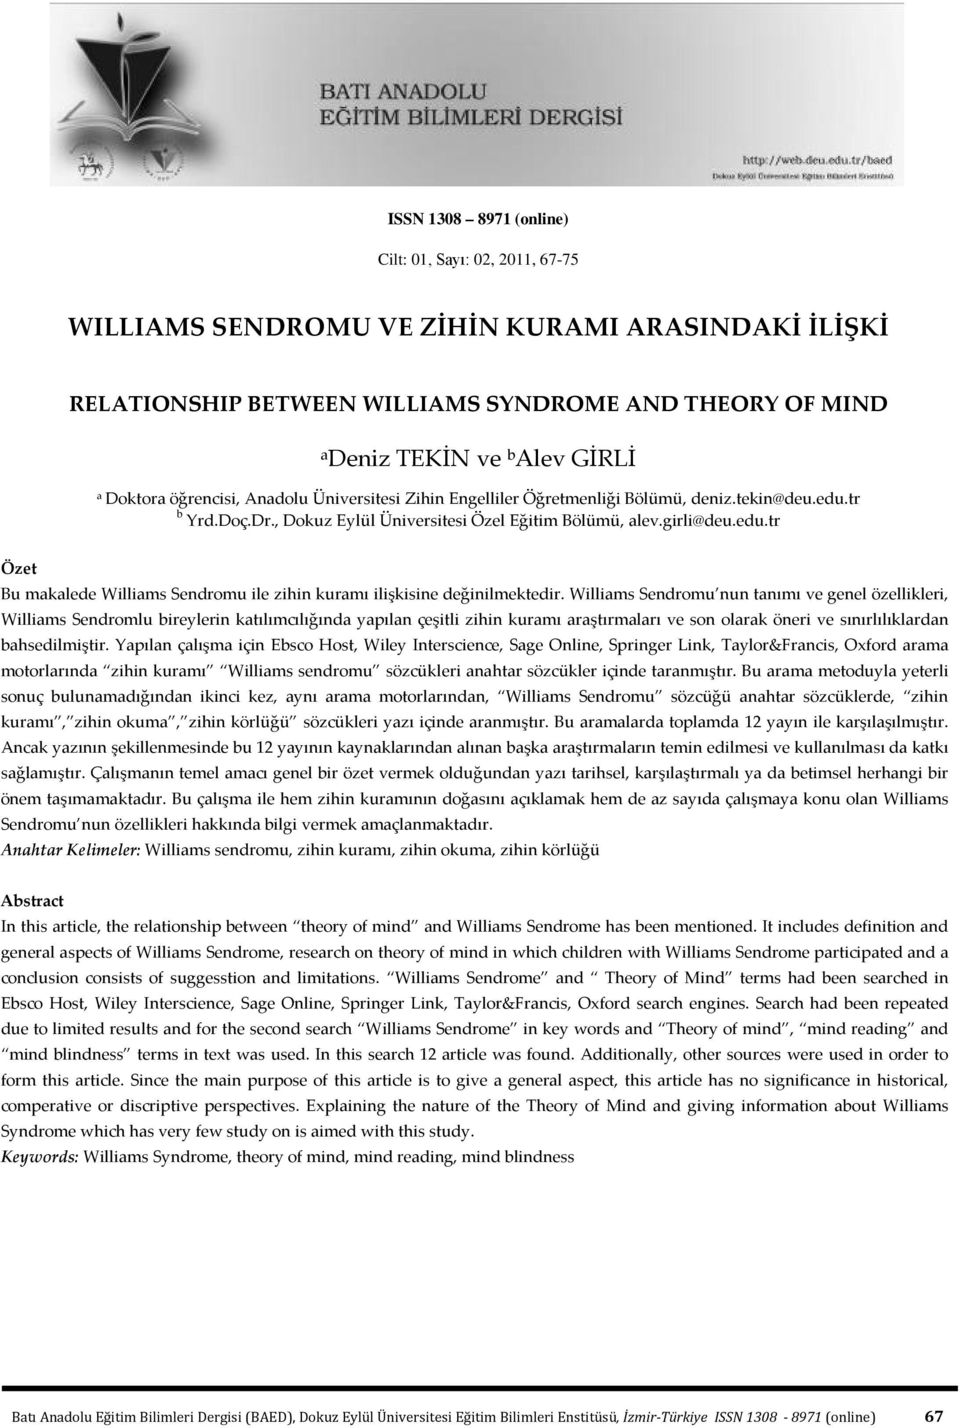 Williams Sendromu nun tanımı ve genel özellikleri, Williams Sendromlu bireylerin katılımcılığında yapılan çeşitli zihin kuramı araştırmaları ve son olarak öneri ve sınırlılıklardan bahsedilmiştir.